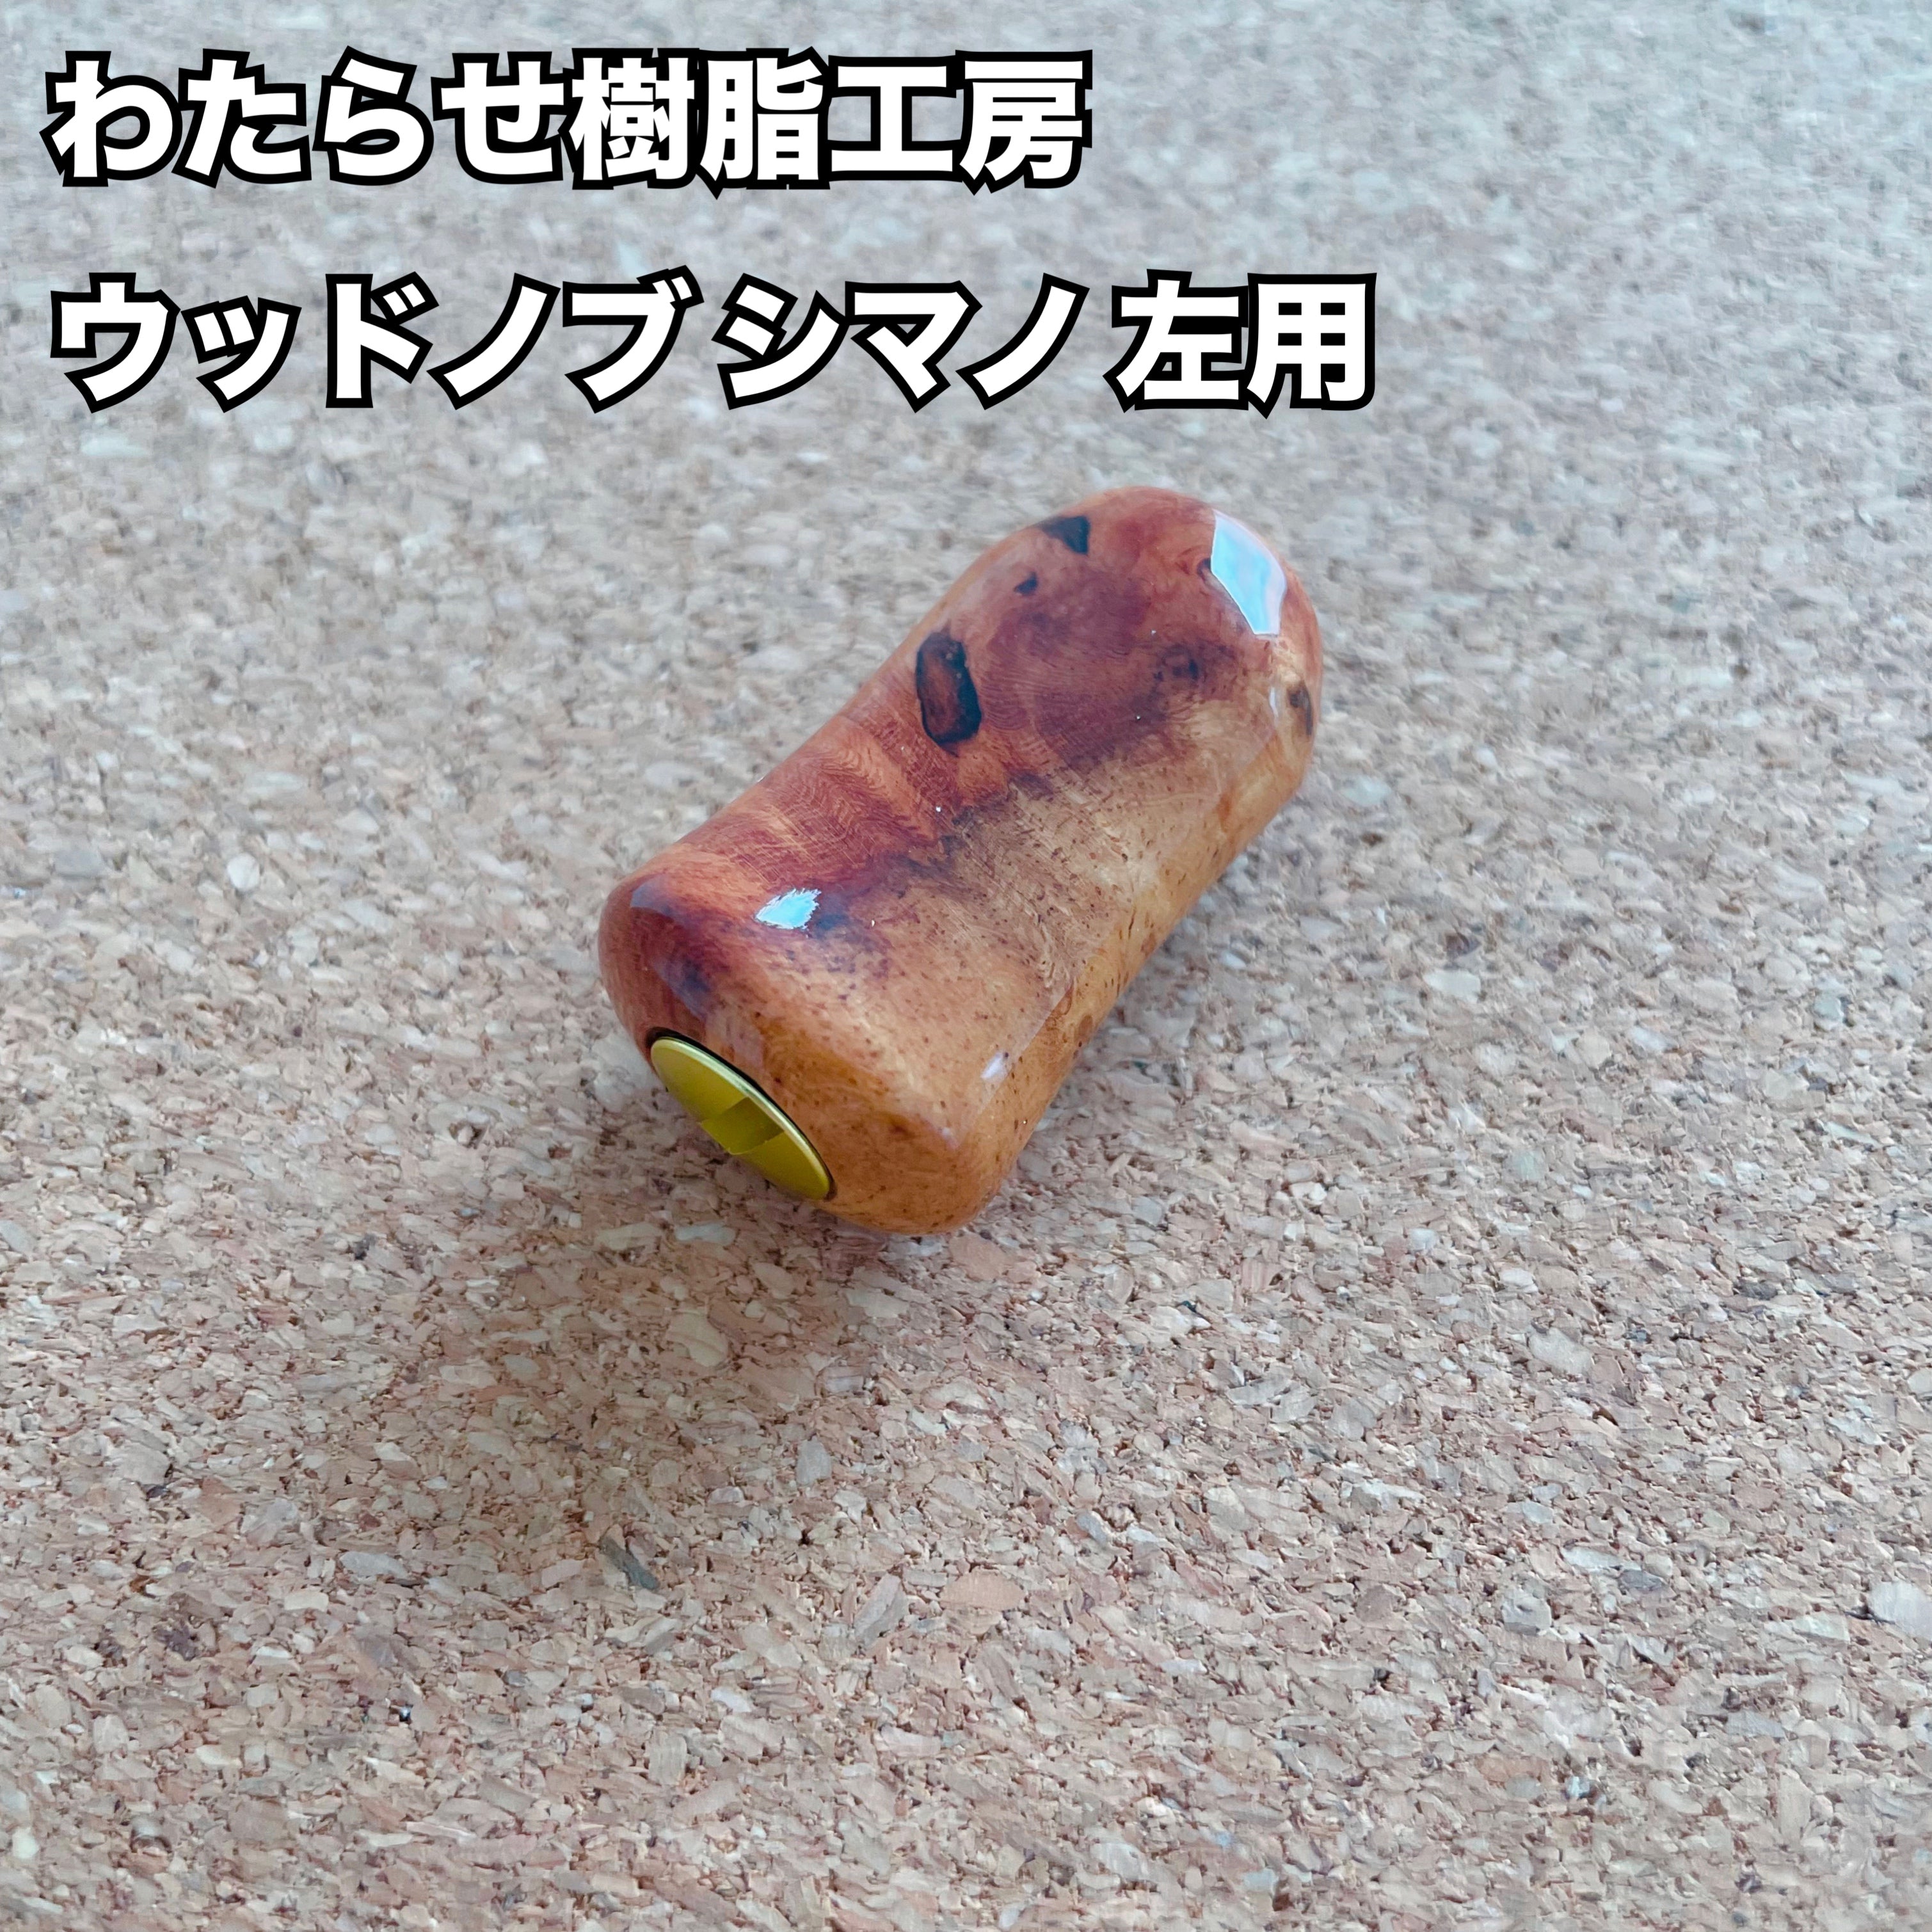 【新規お取り扱い🙌✨】わたらせ樹脂工房 ウッドノブ シマノ 左用 01 / Watarase Resin Studio Wood knob  Shimano for left